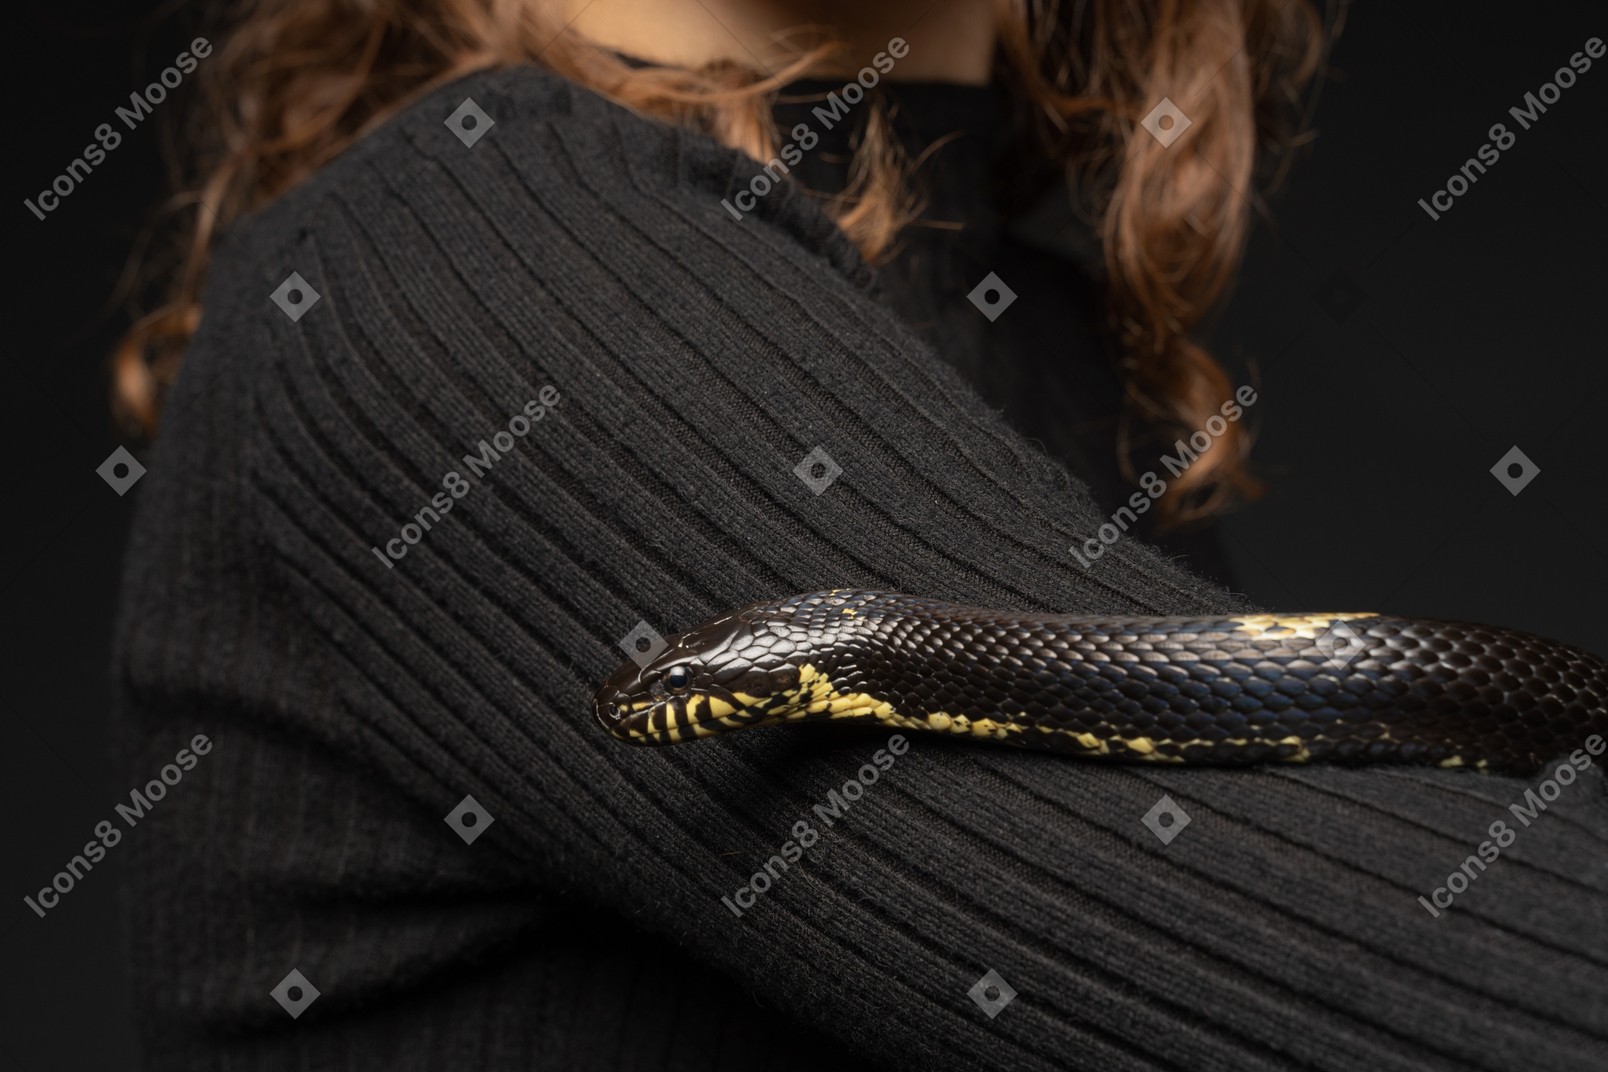 젊은 여자의 목에 검은 줄무늬 뱀 커브